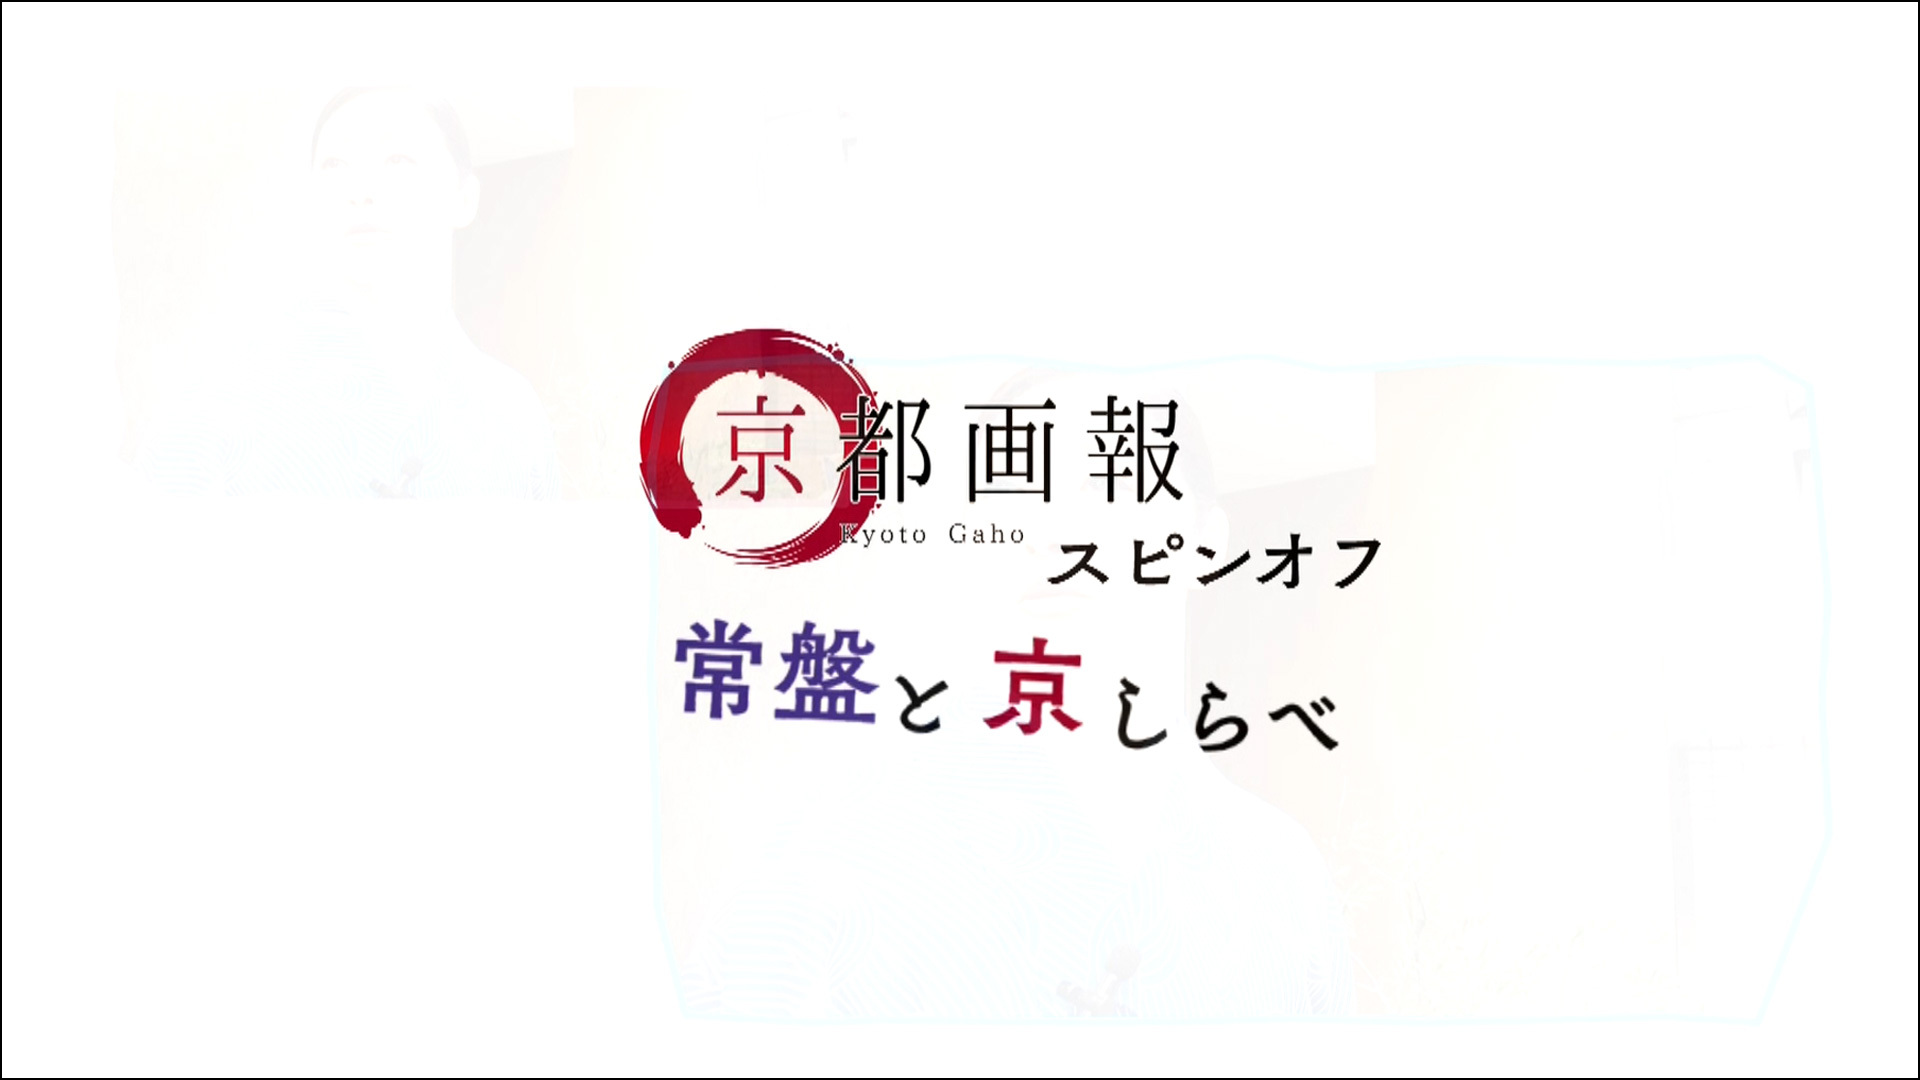 「京都画報」スピンオフ『常盤と京しらべ』